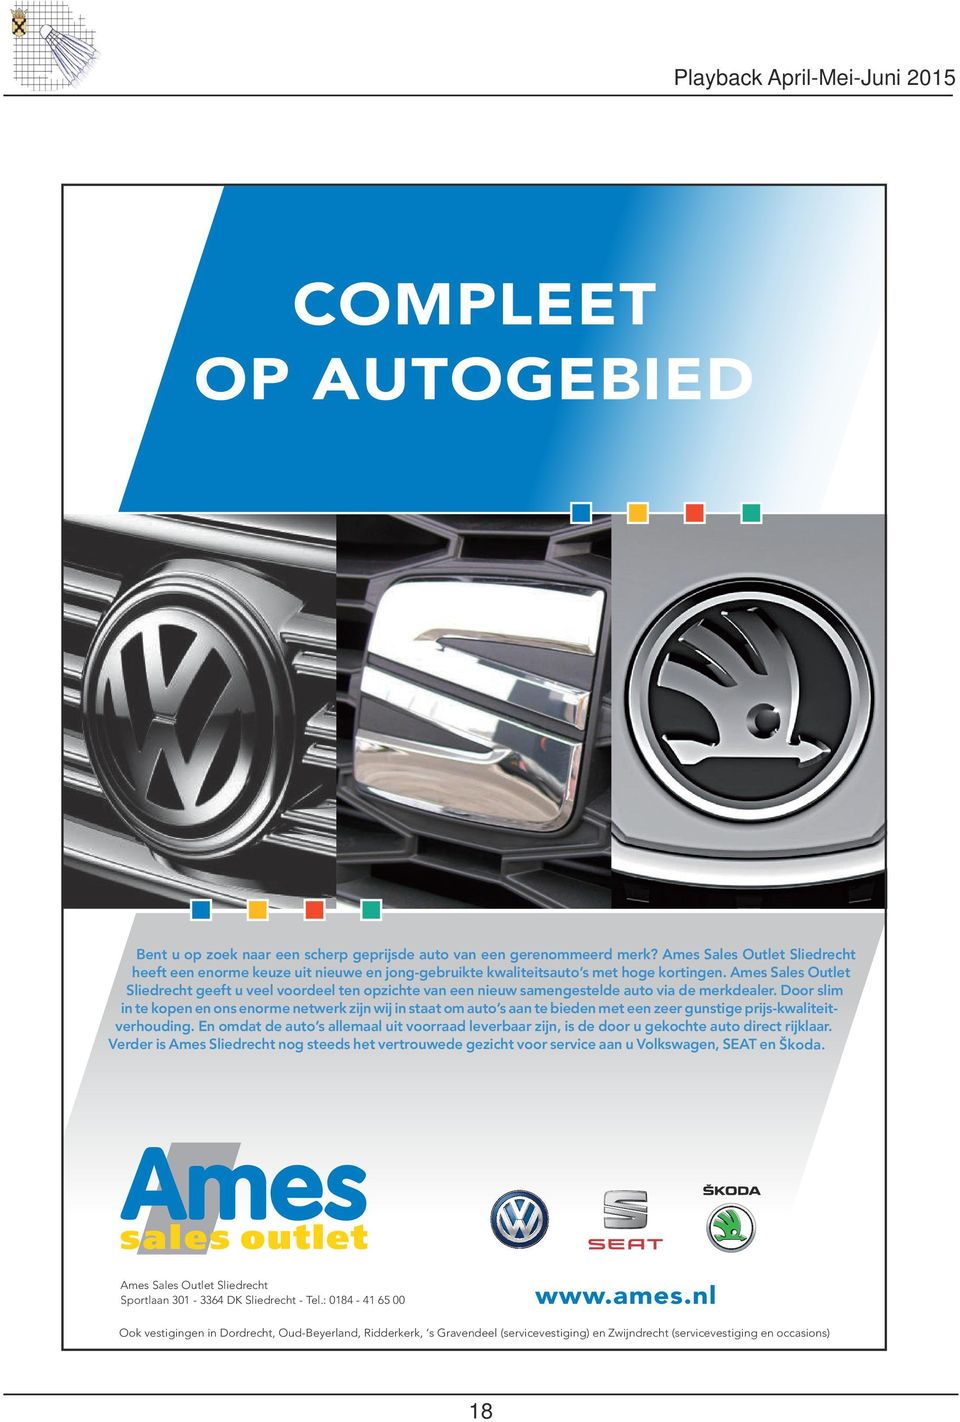 Ames Sales Outlet Sliedrecht geeft u veel voordeel ten opzichte van een nieuw samengestelde auto via de merkdealer.